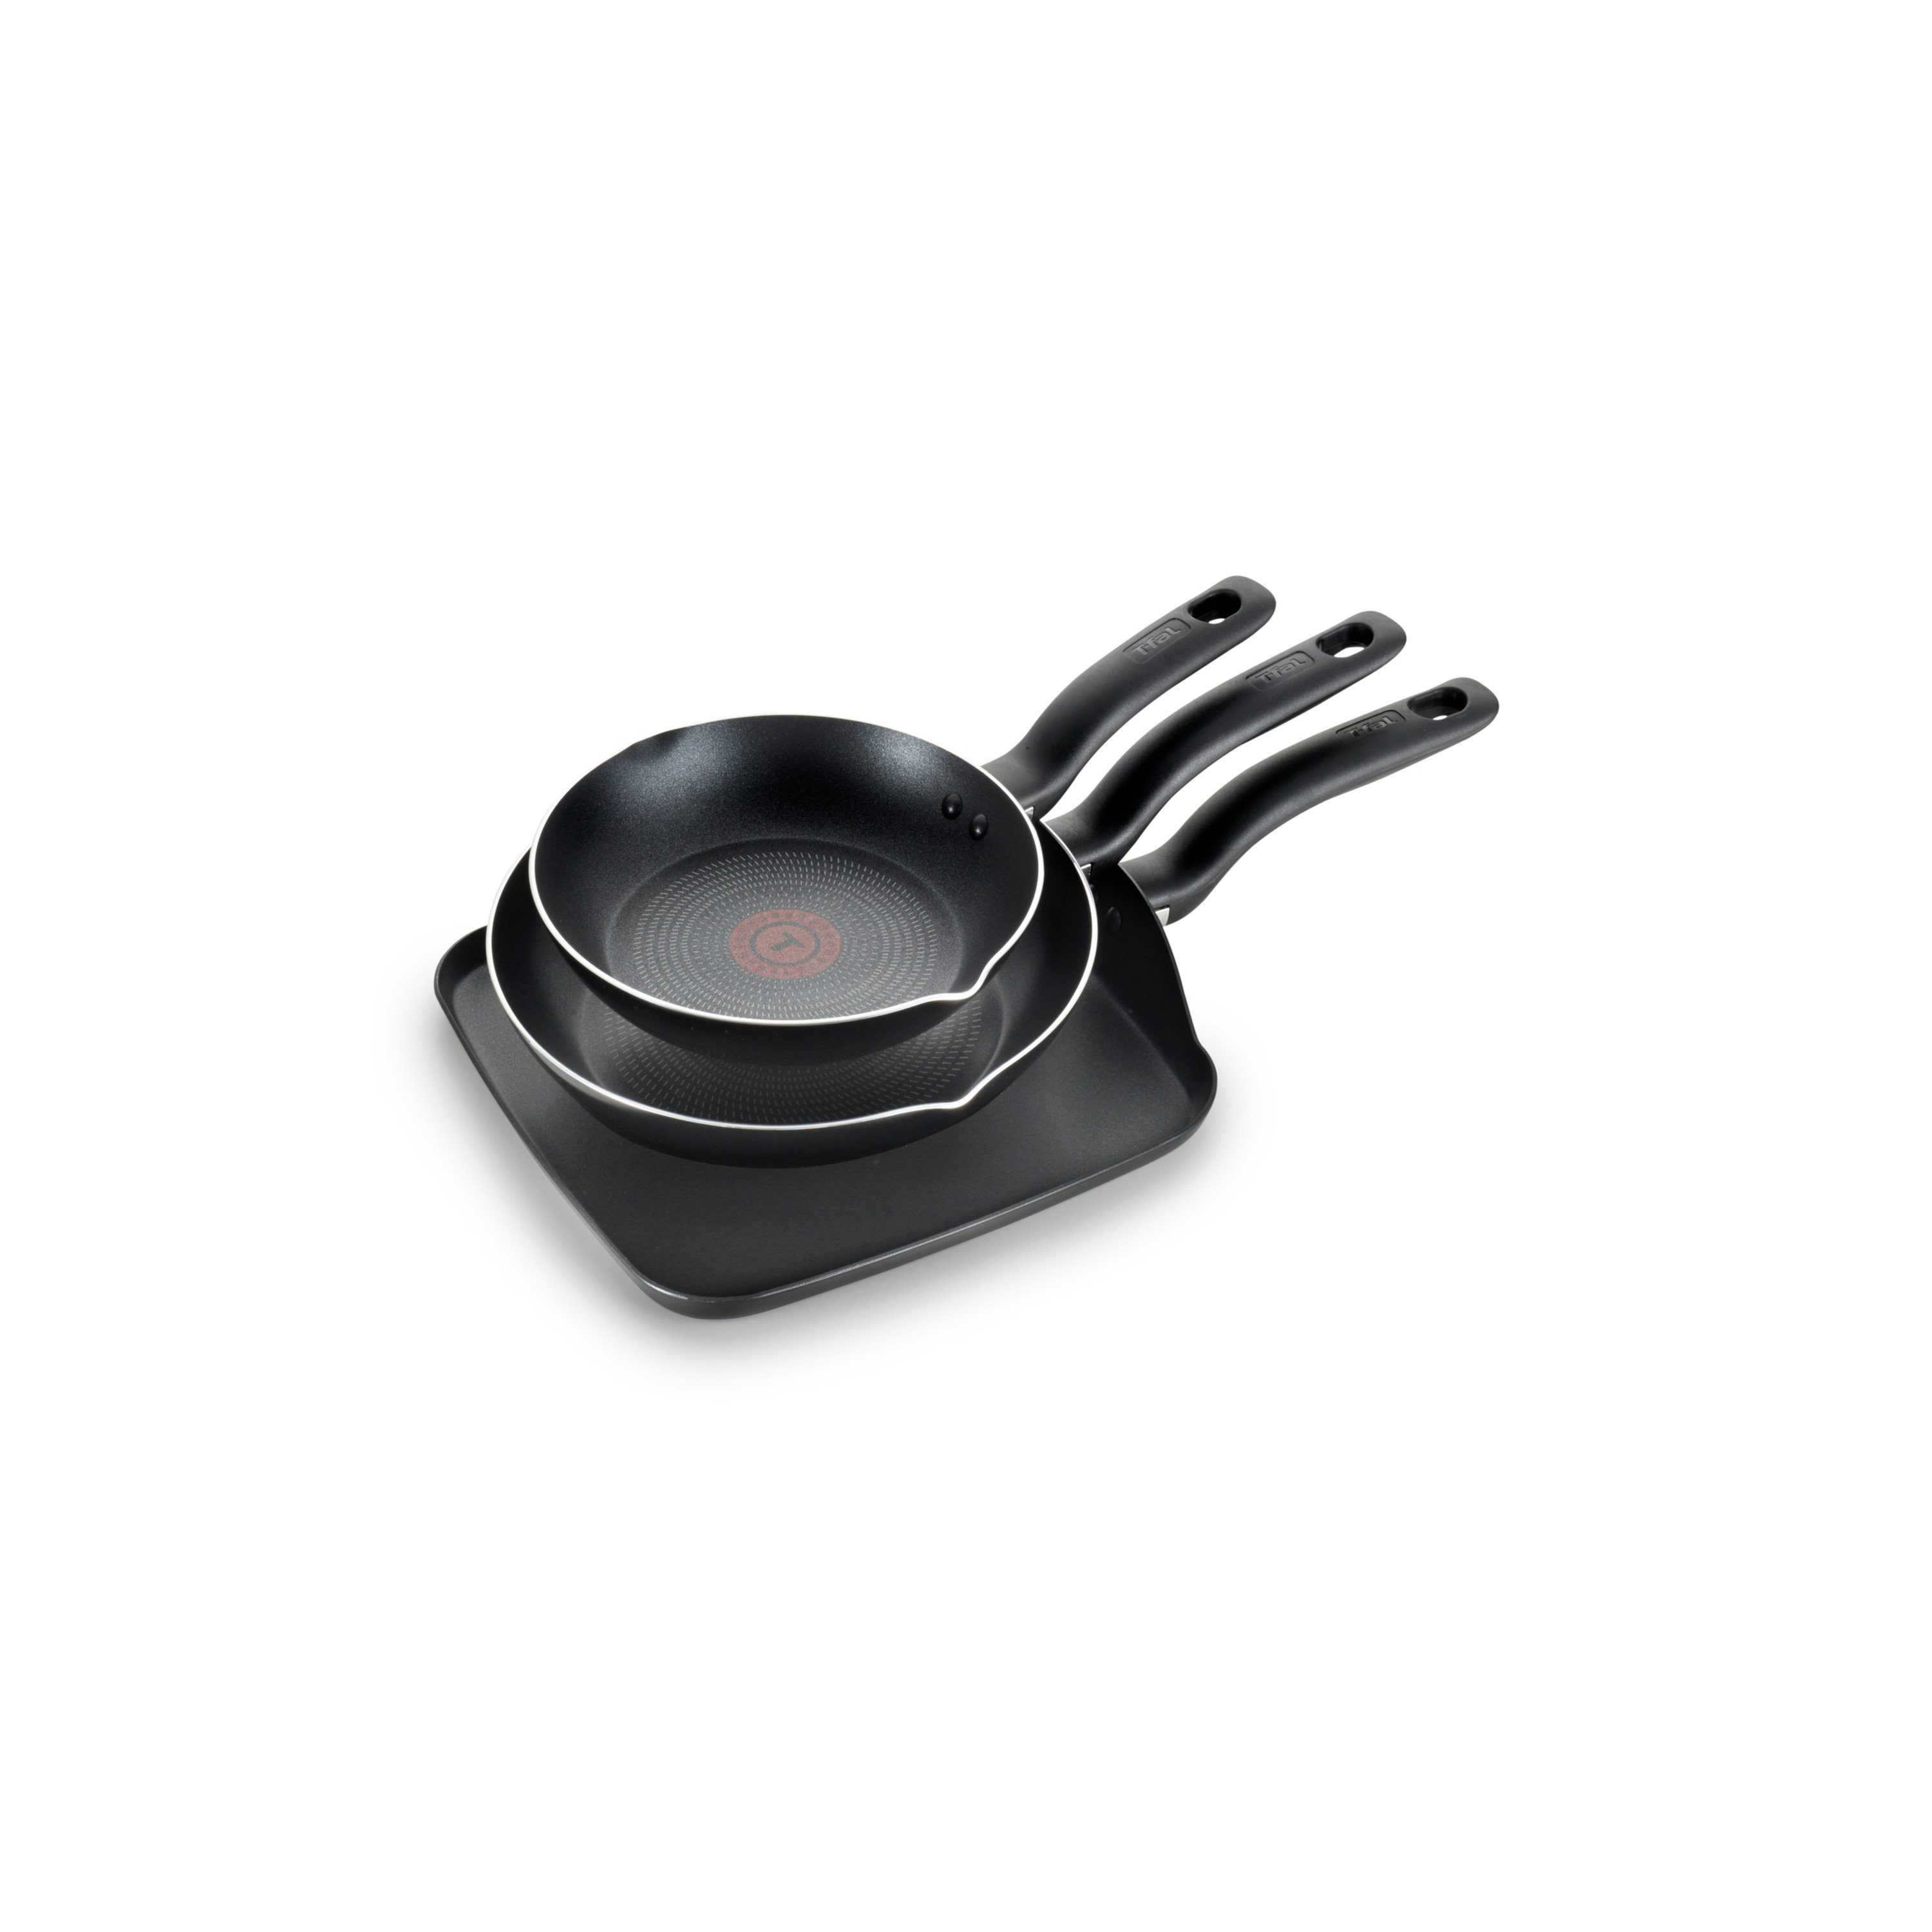 https://assets.wfcdn.com/im/44812568/compr-r85/2361/236166147/t-fal-culinaire-nonstick-cookware-3-piece-set-black.jpg